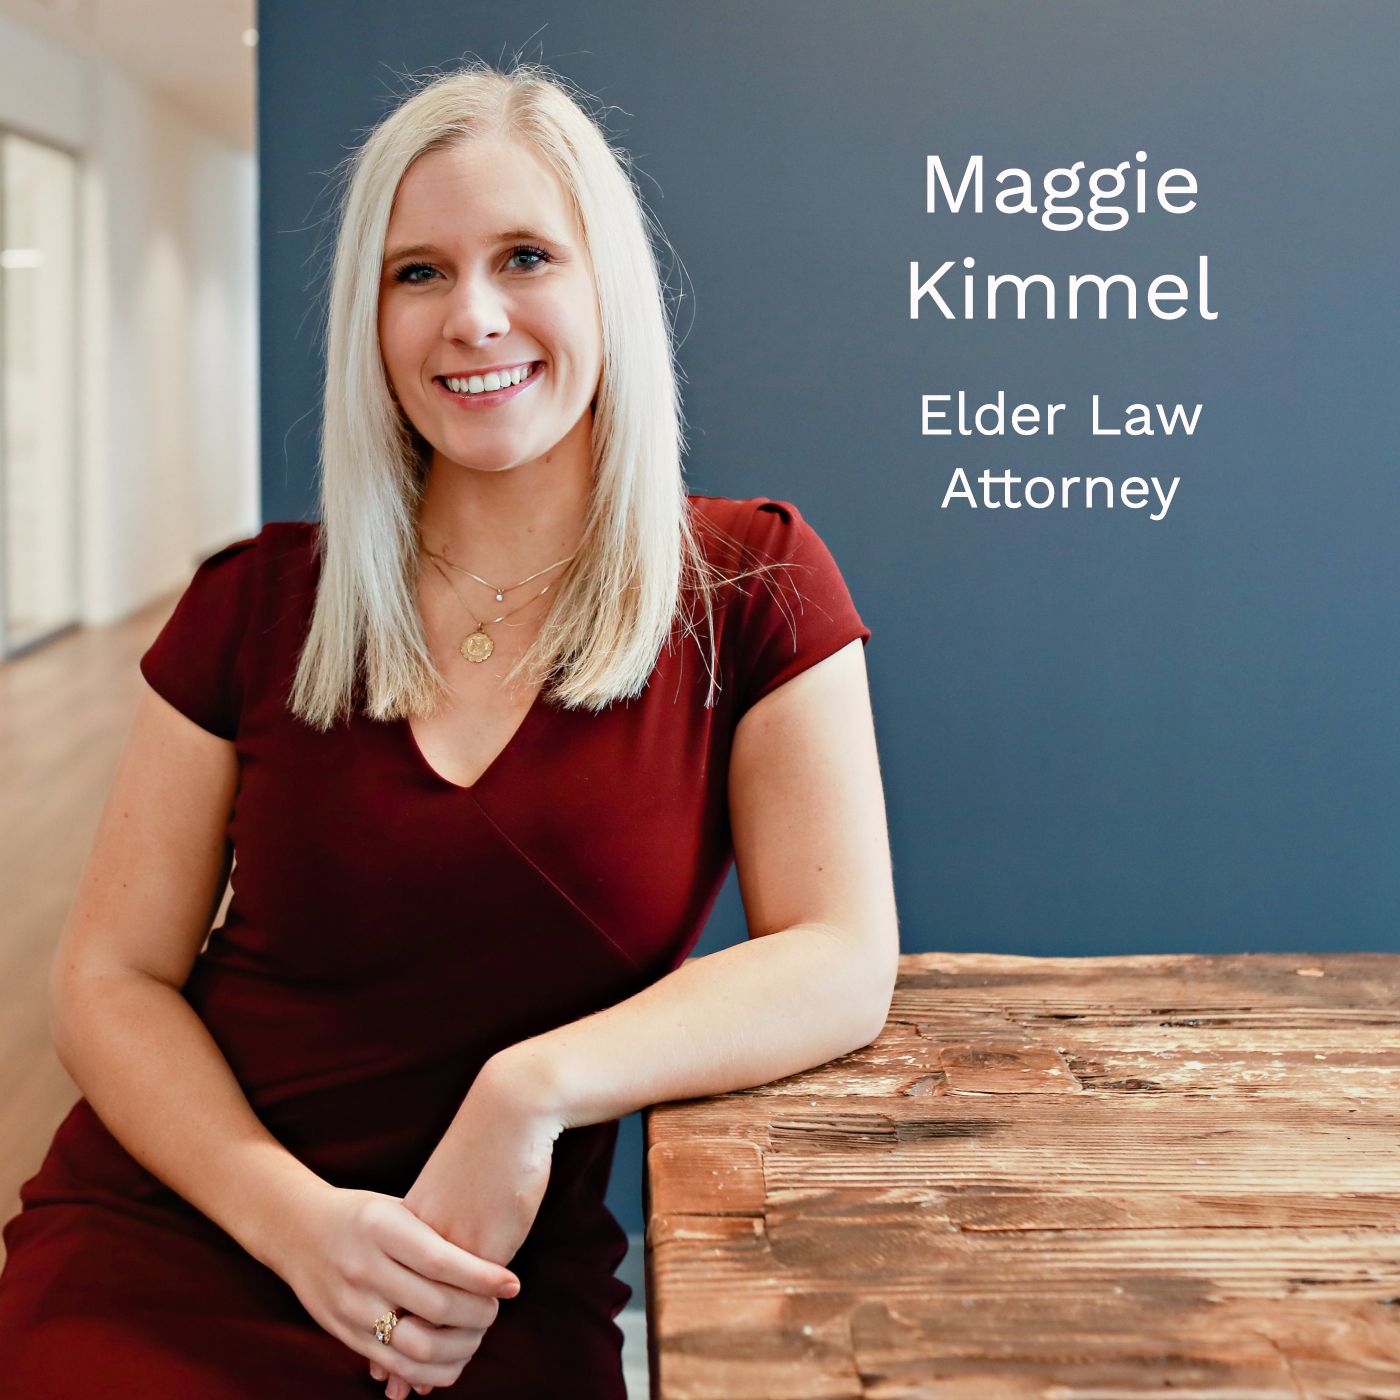 Elder Law Attorney Maggie Kimmel